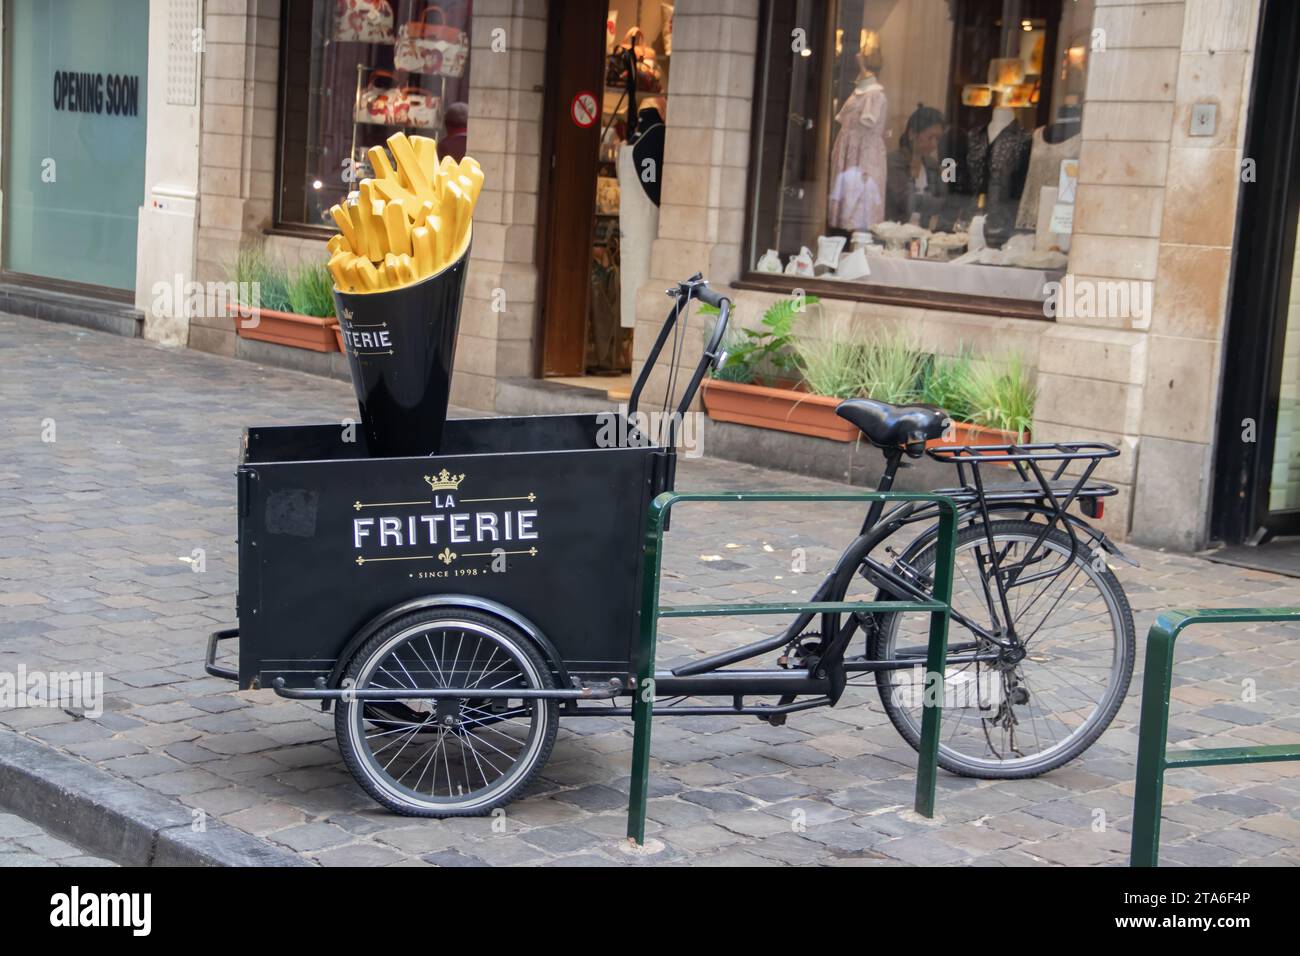 French Fries (friteria en langue flamande) signe de vélo à l'extérieur du restaurant dans les rues de Bruxelles, marketing agréable Banque D'Images